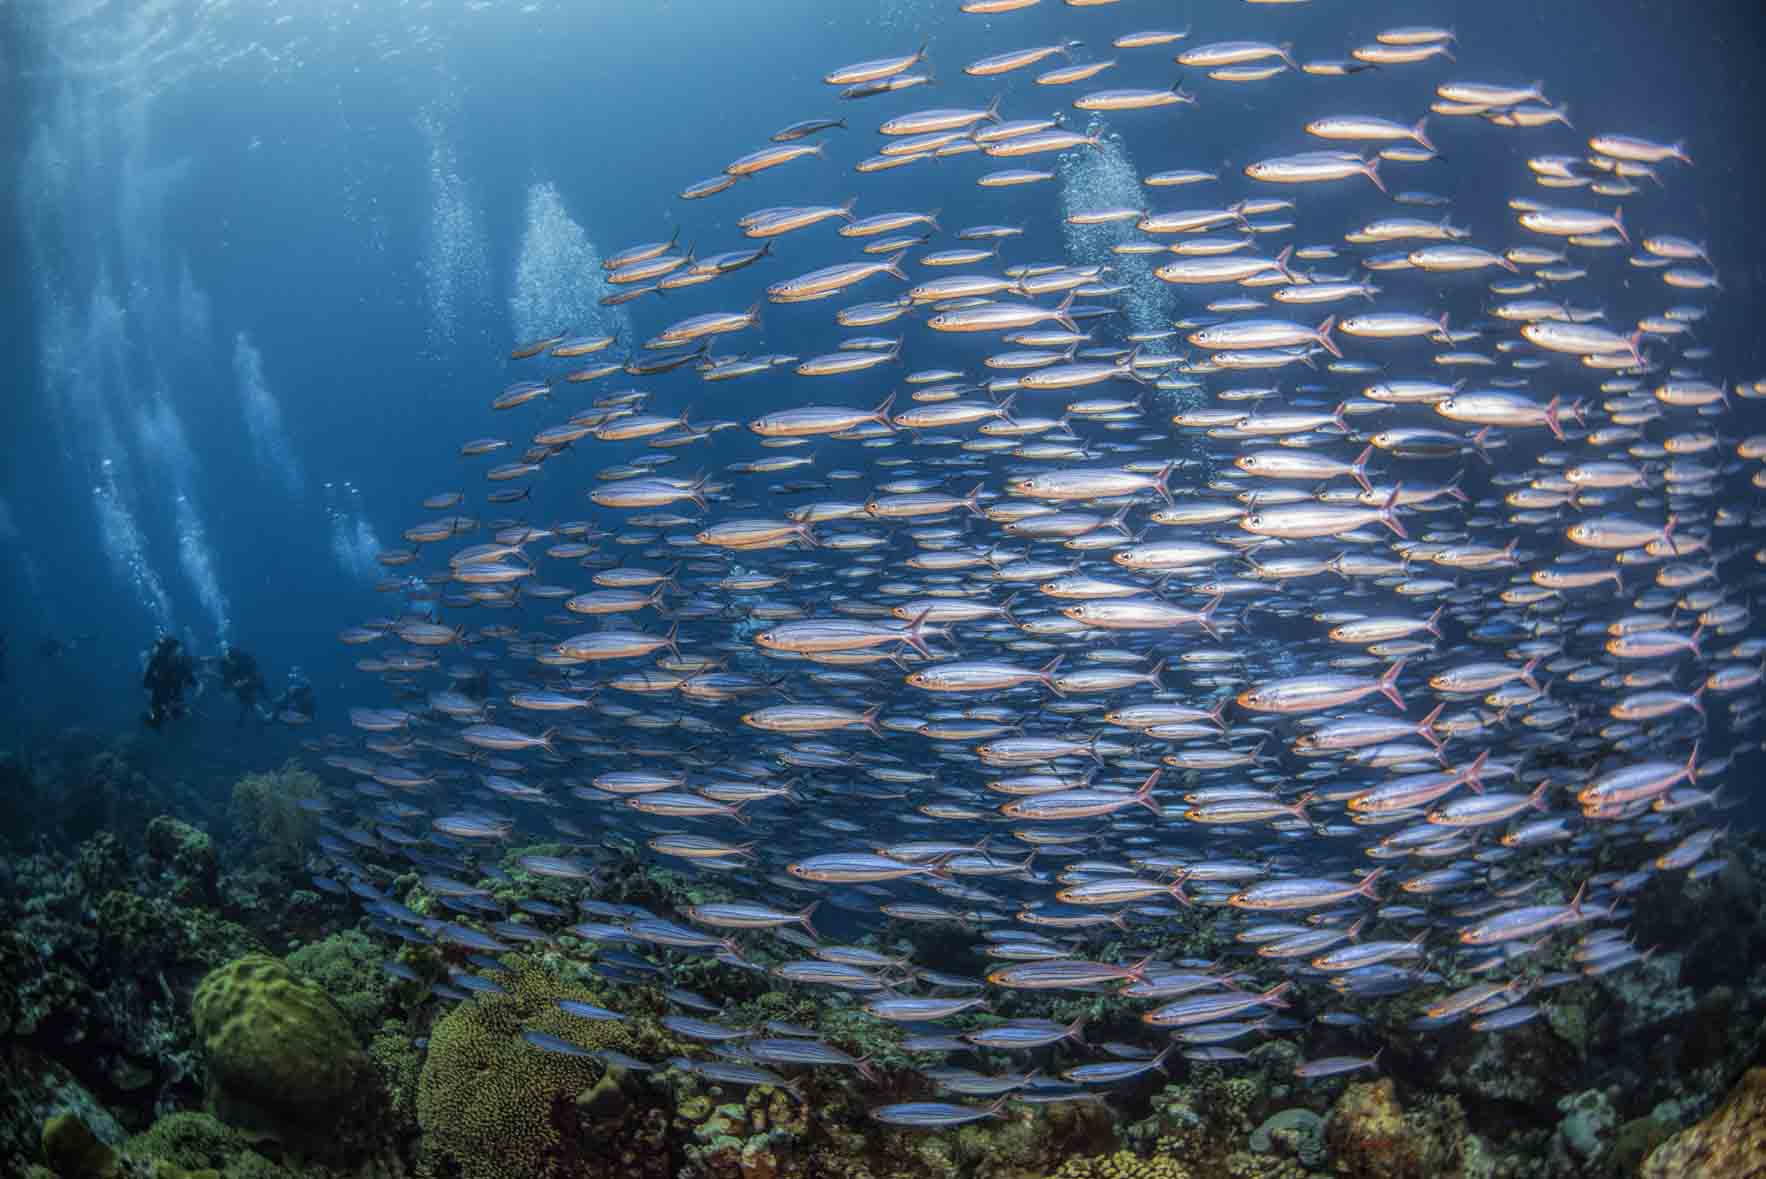 Em fotografia subaquática, as imagens captadas num plano mais aberto são chamadas de panorâmicas, e focam aspectos do universo marinho, como cardumes